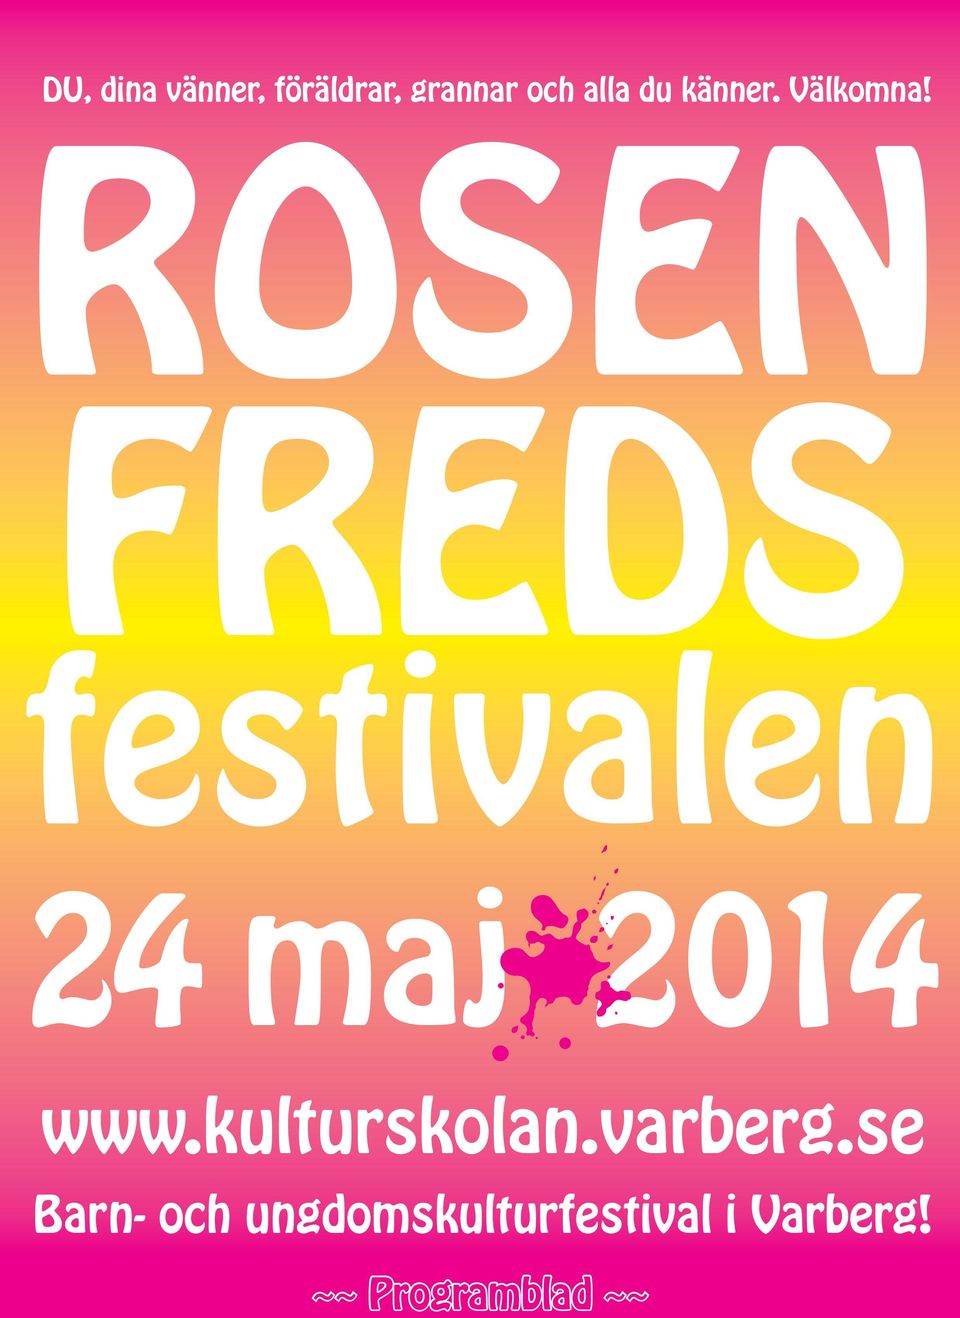 ROSEN FREDS festivalen 24 maj 2014 www.